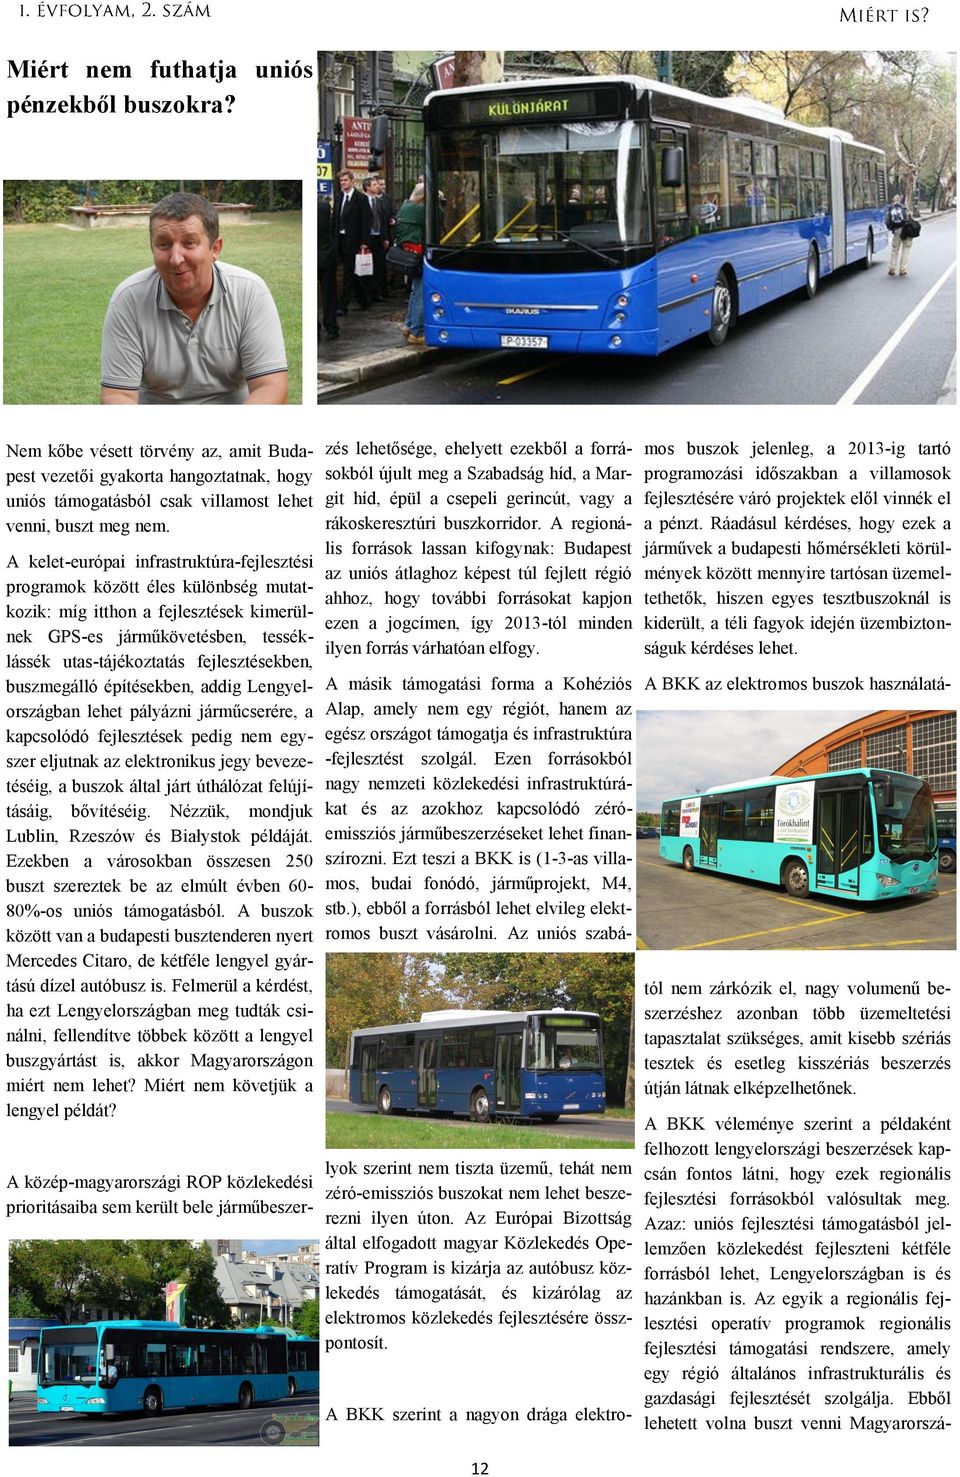 buszmegálló építésekben, addig Lengyelországban lehet pályázni járműcserére, a kapcsolódó fejlesztések pedig nem egyszer eljutnak az elektronikus jegy bevezetéséig, a buszok által járt úthálózat